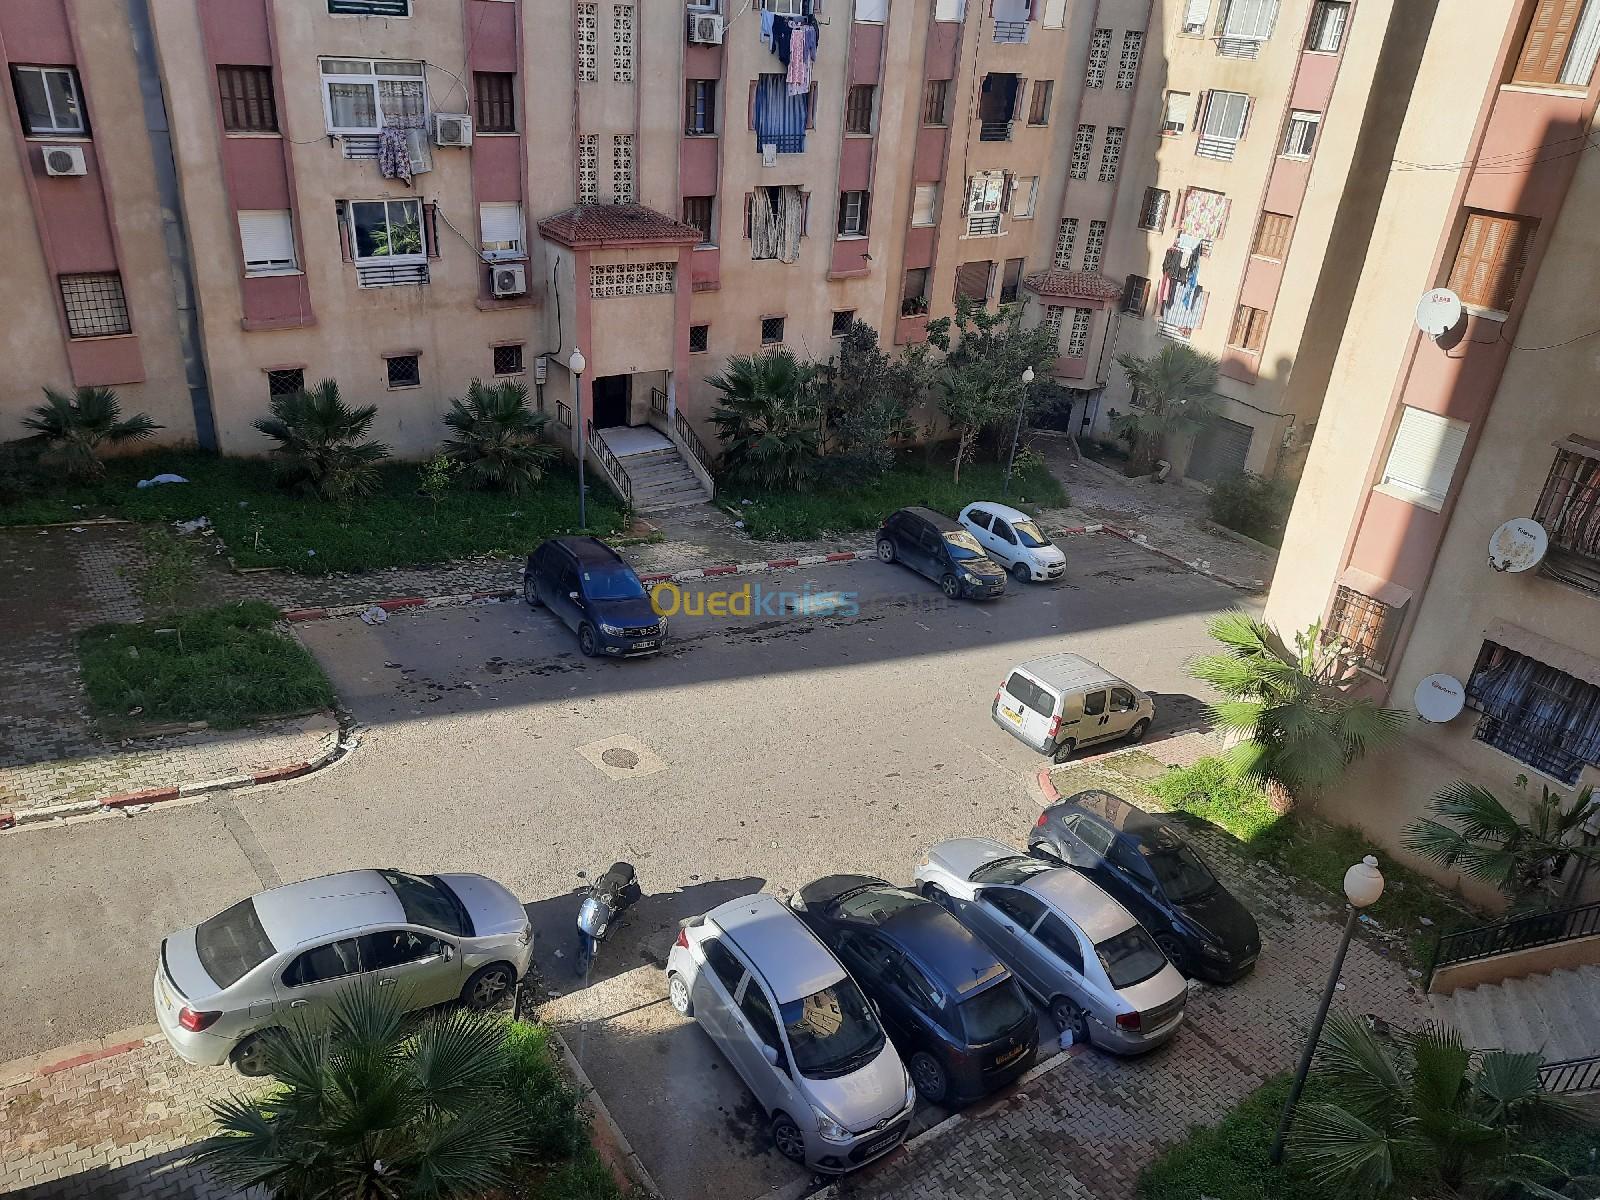 Rent Apartment F3 Alger El achour